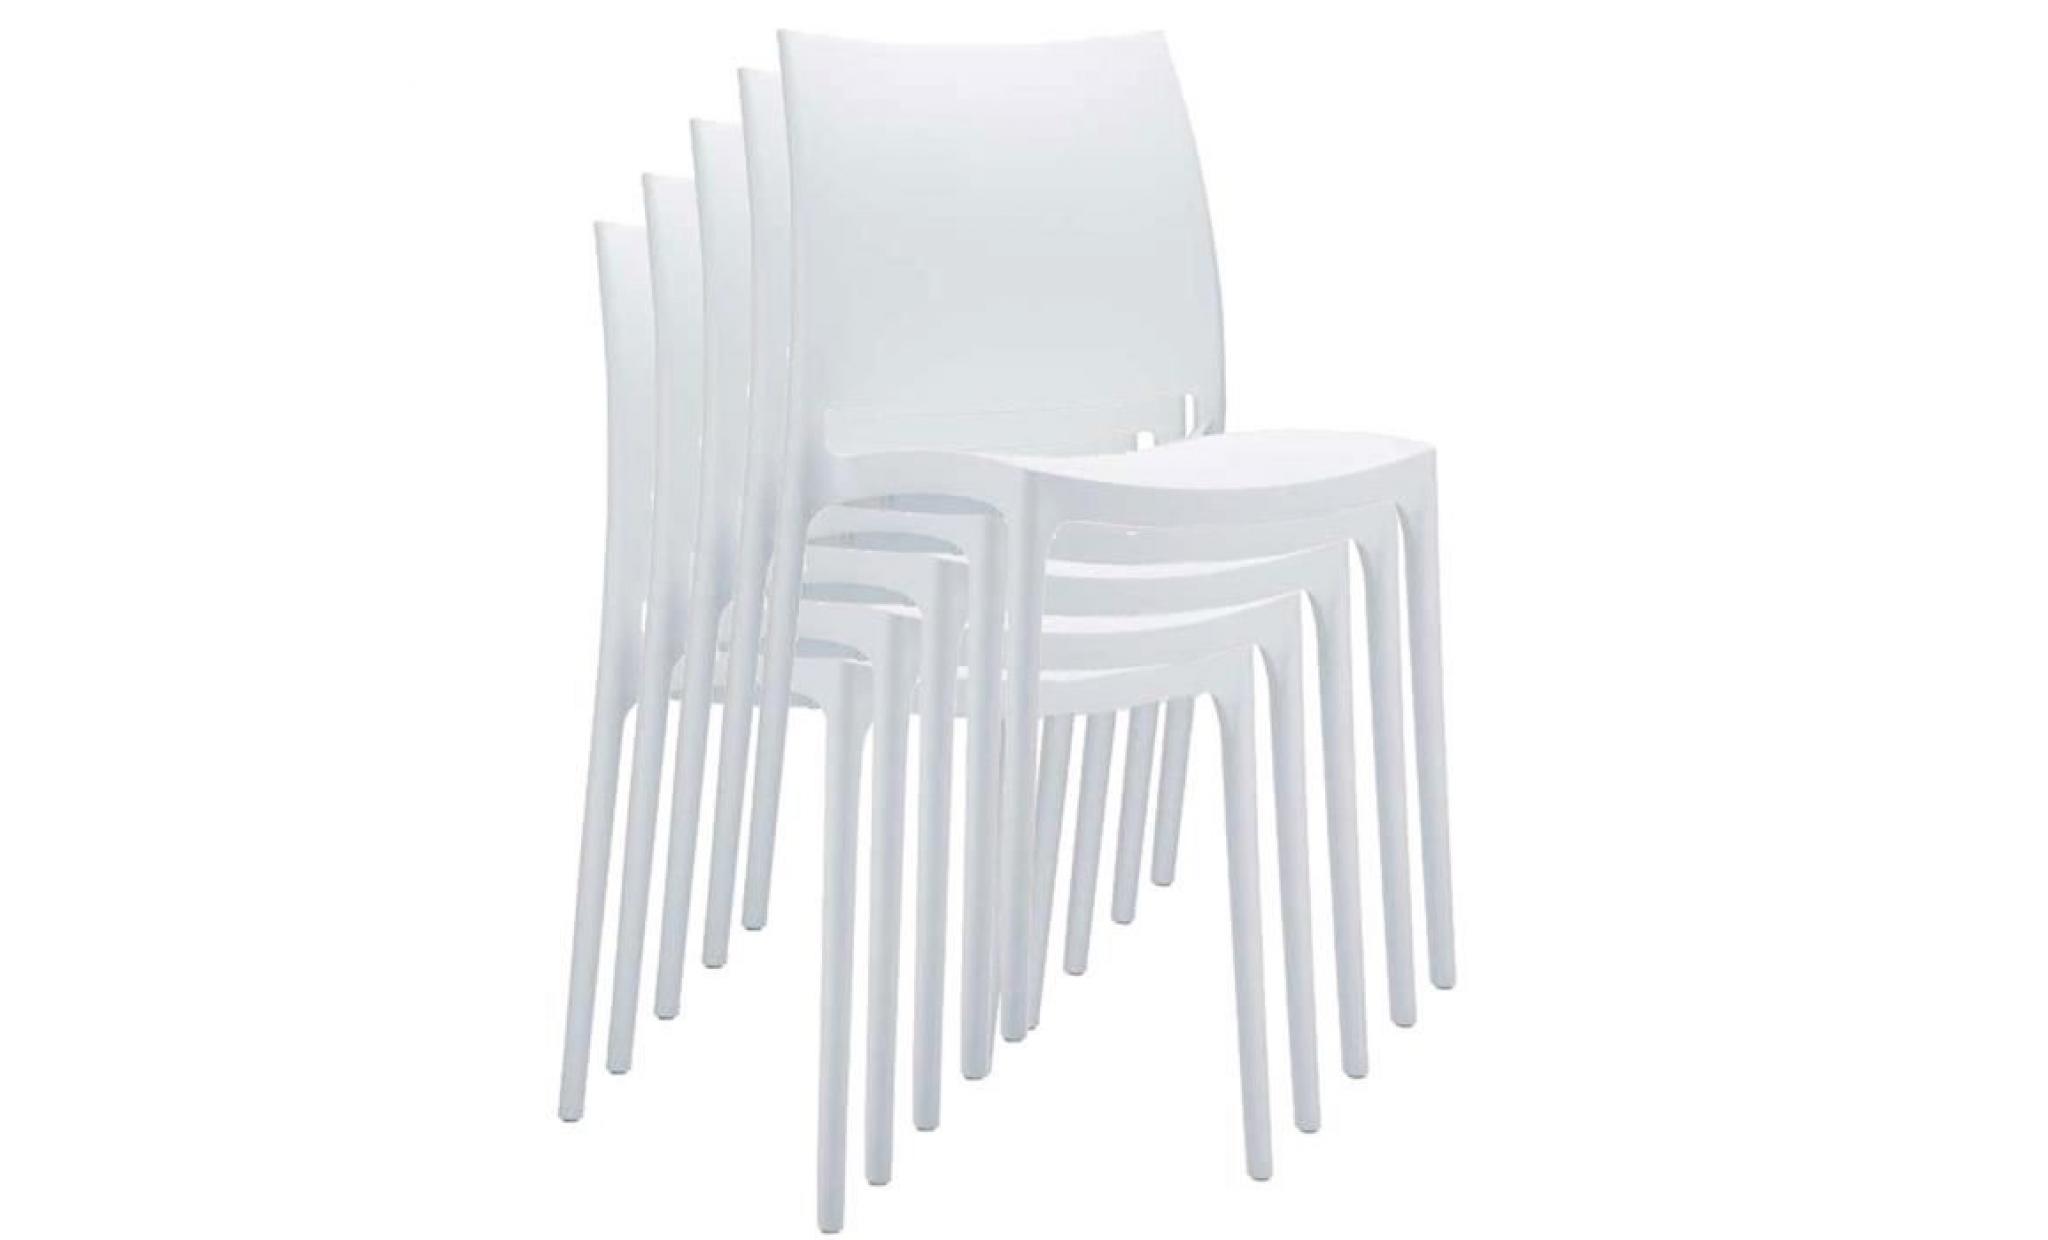 Chaise de jardin empilable en plastique blanc, Dim : H84 x P53 x L57 cm pas cher